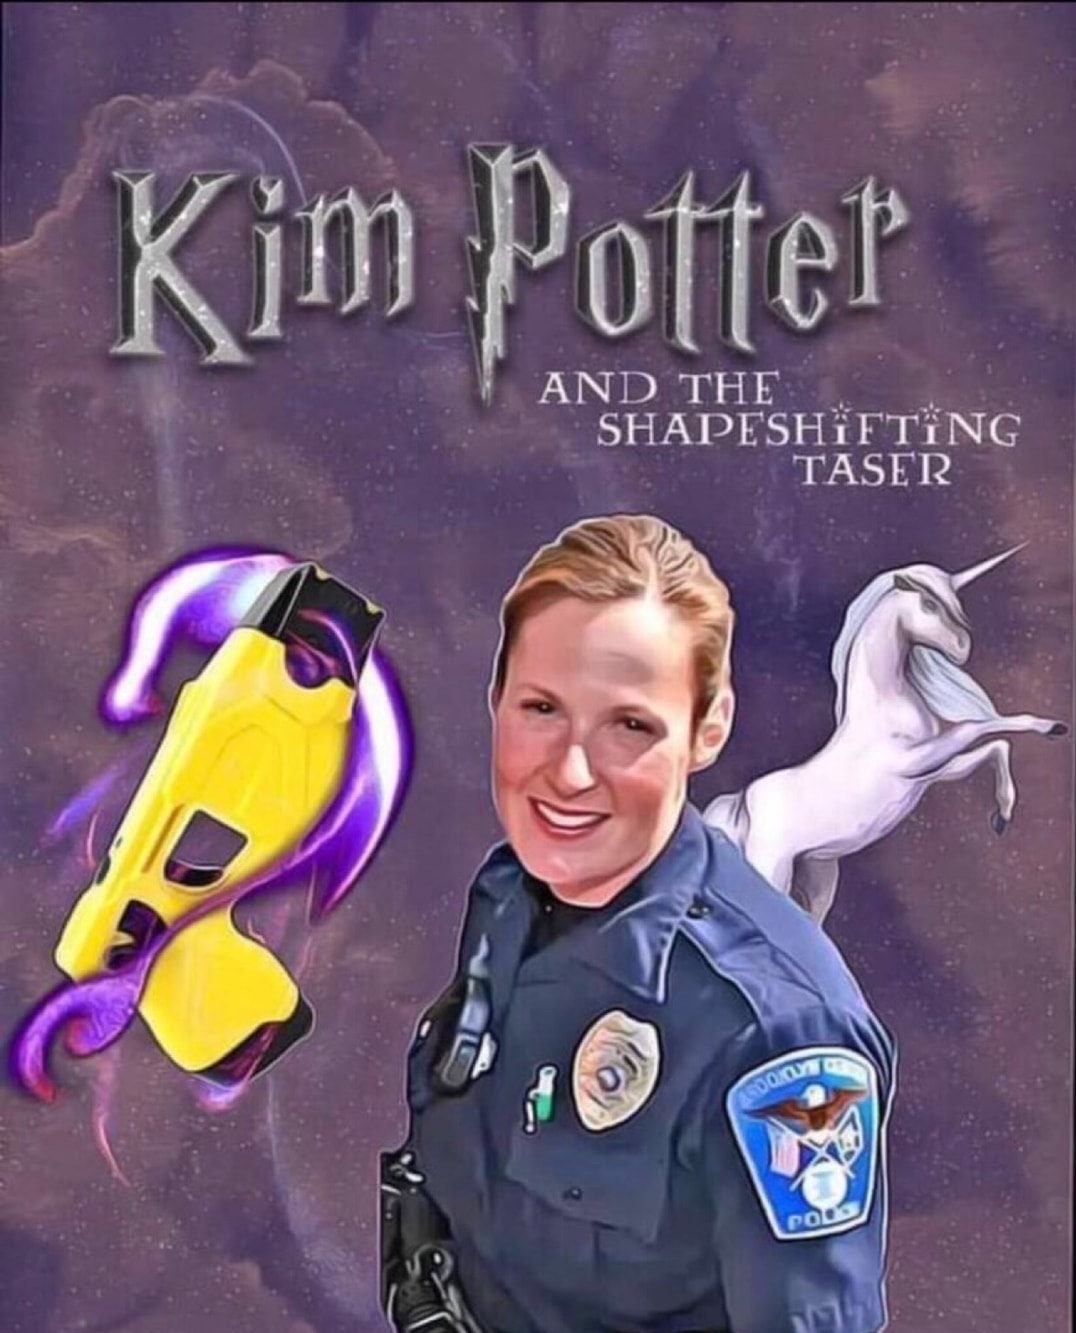 Kim Potter and the shapeshifting tazer meme